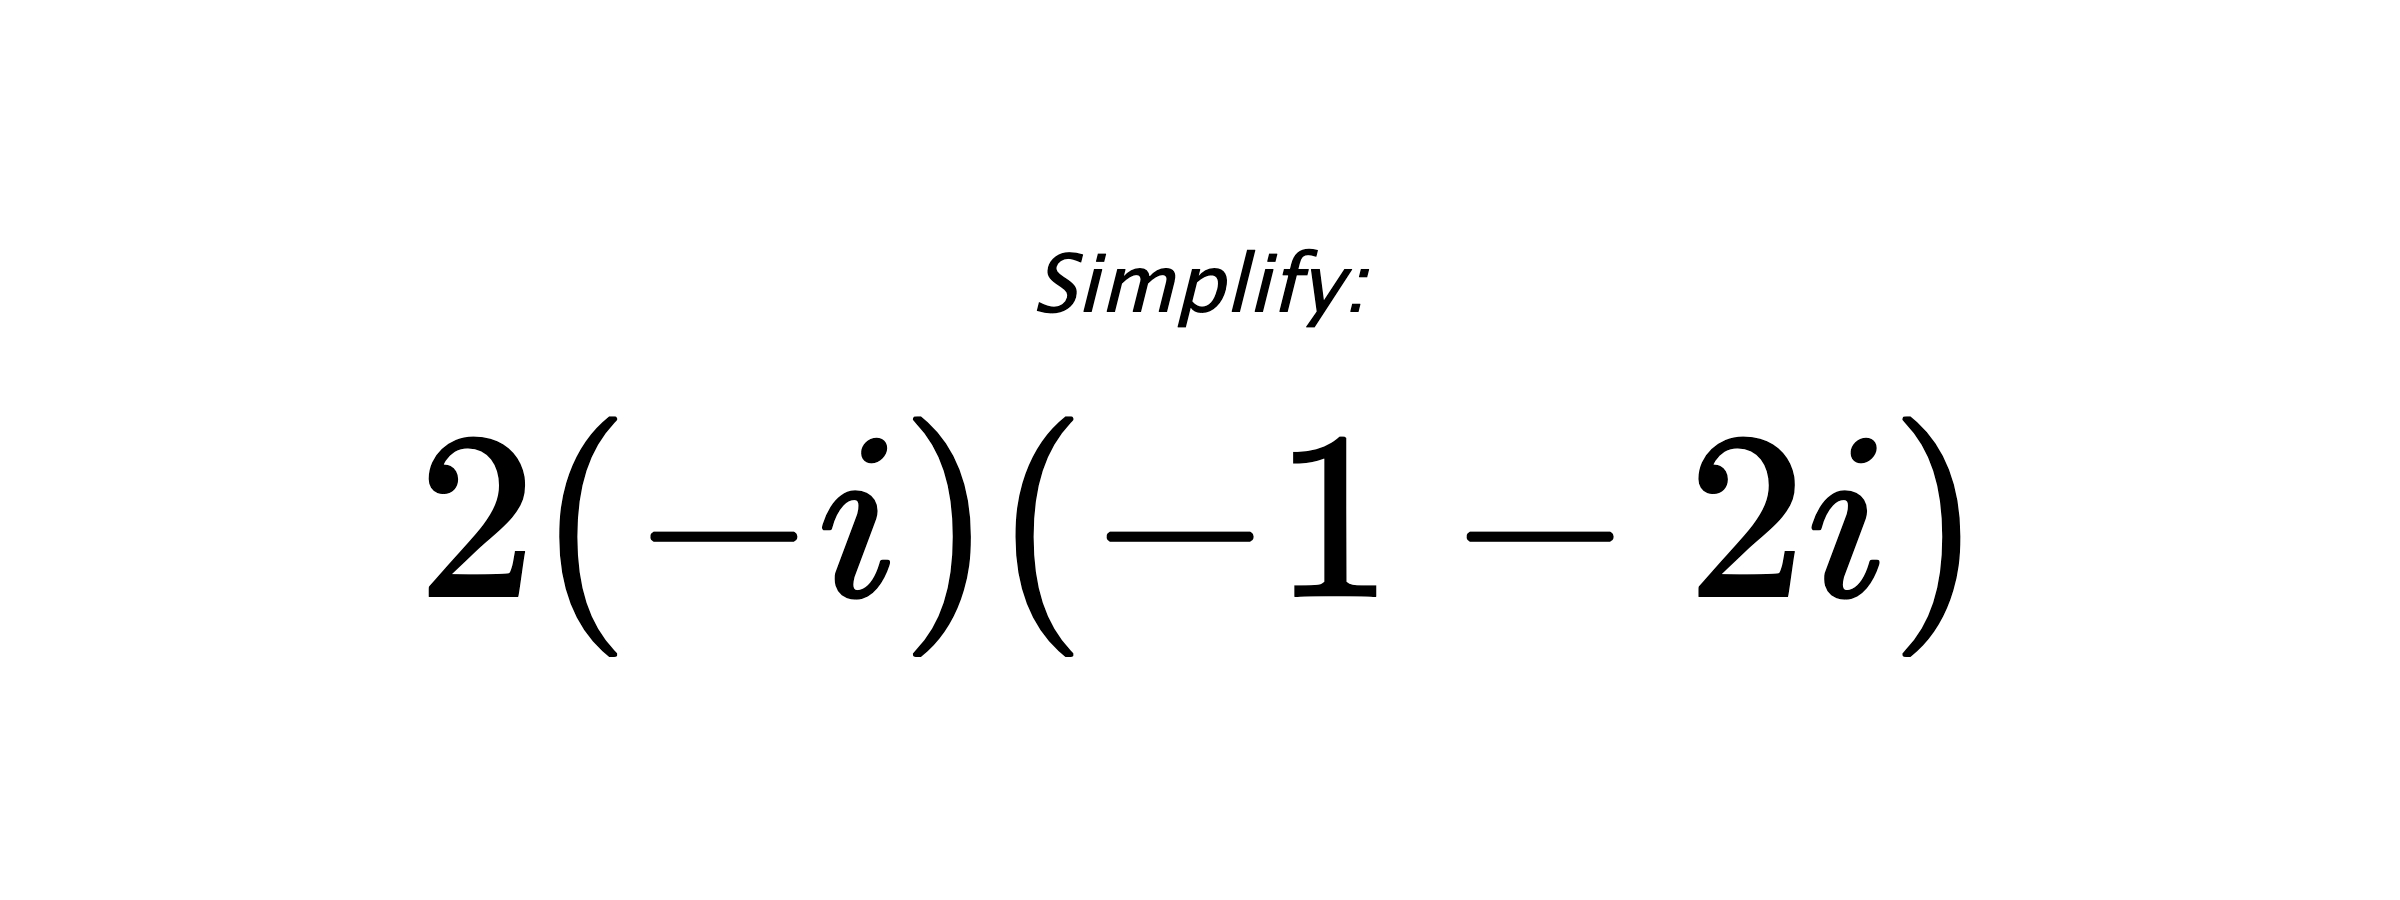 Simplify: $ 2(-i)(-1-2i) $